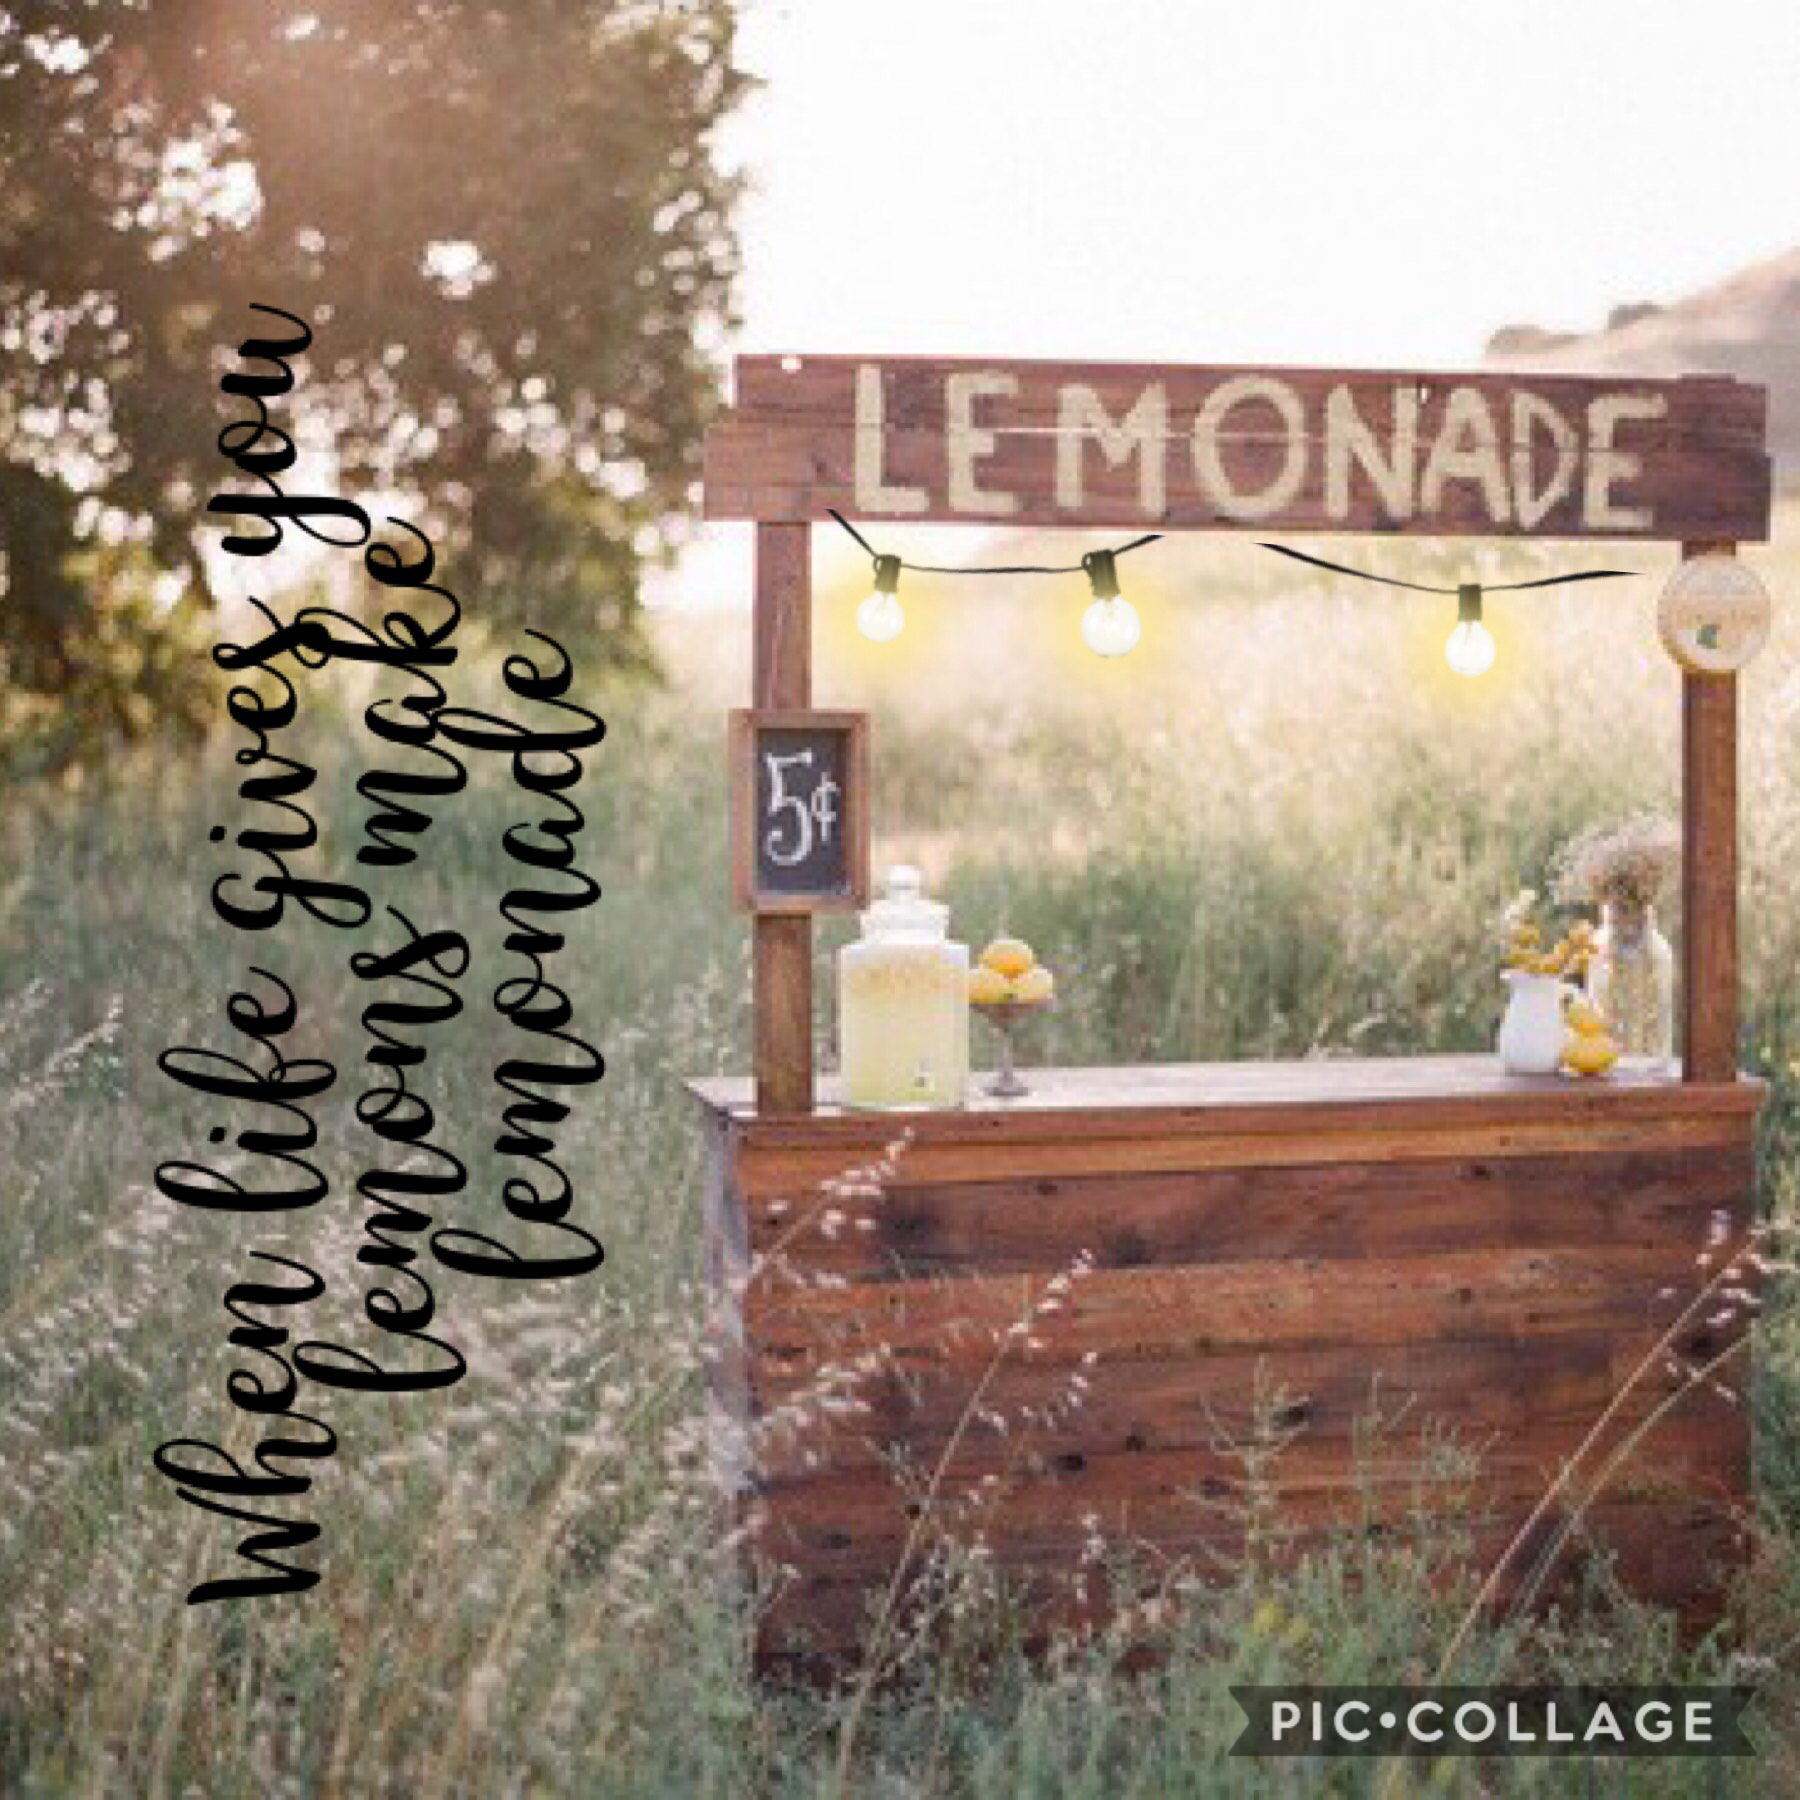 We life gives you lemons make lemonade 
